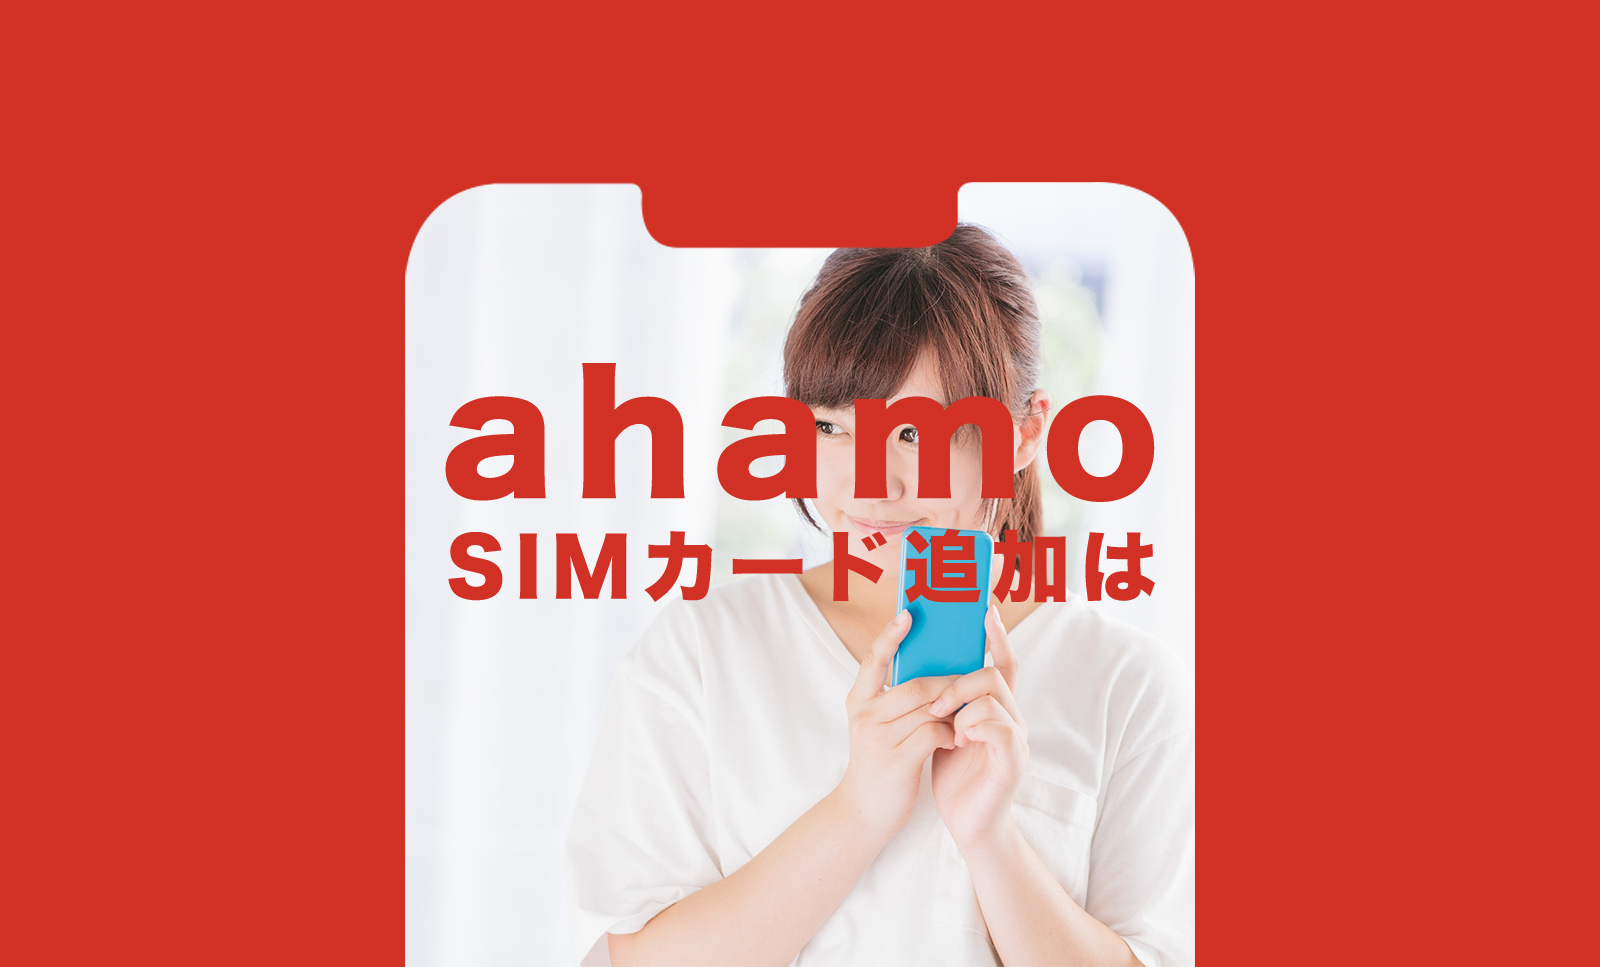 ahamo(アハモ)はSIMカード追加ができる。2枚目以降の場合のやり方。のサムネイル画像